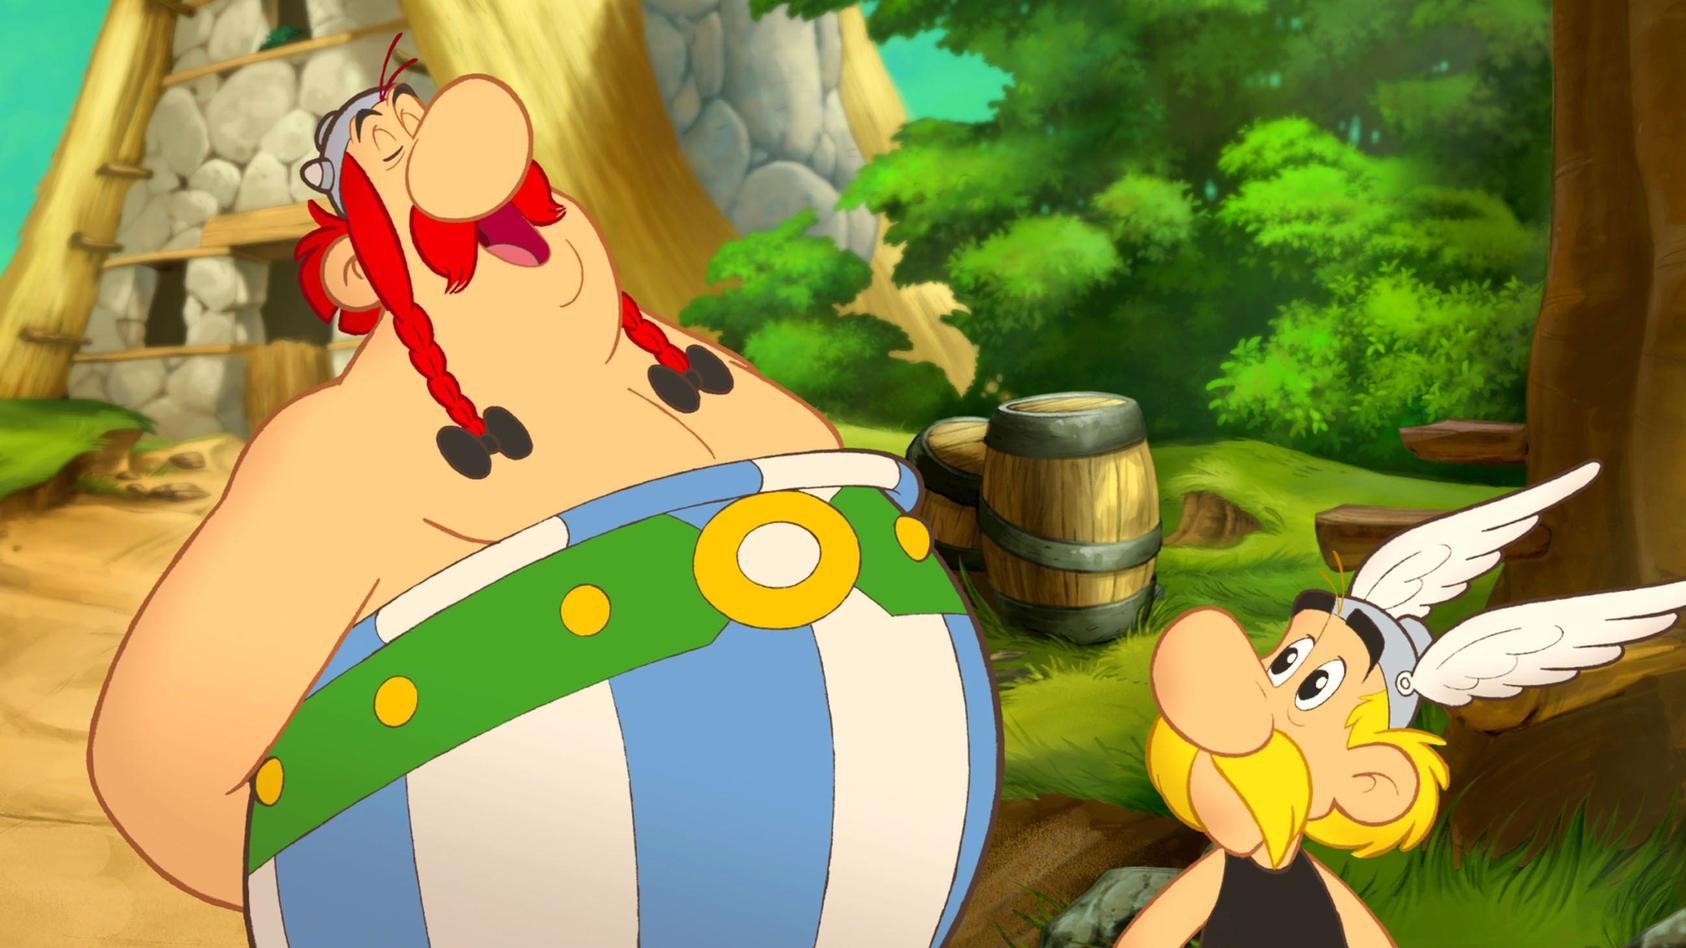 filmreihe-asterix-obelix-jetzt-auf-rtl-streamen